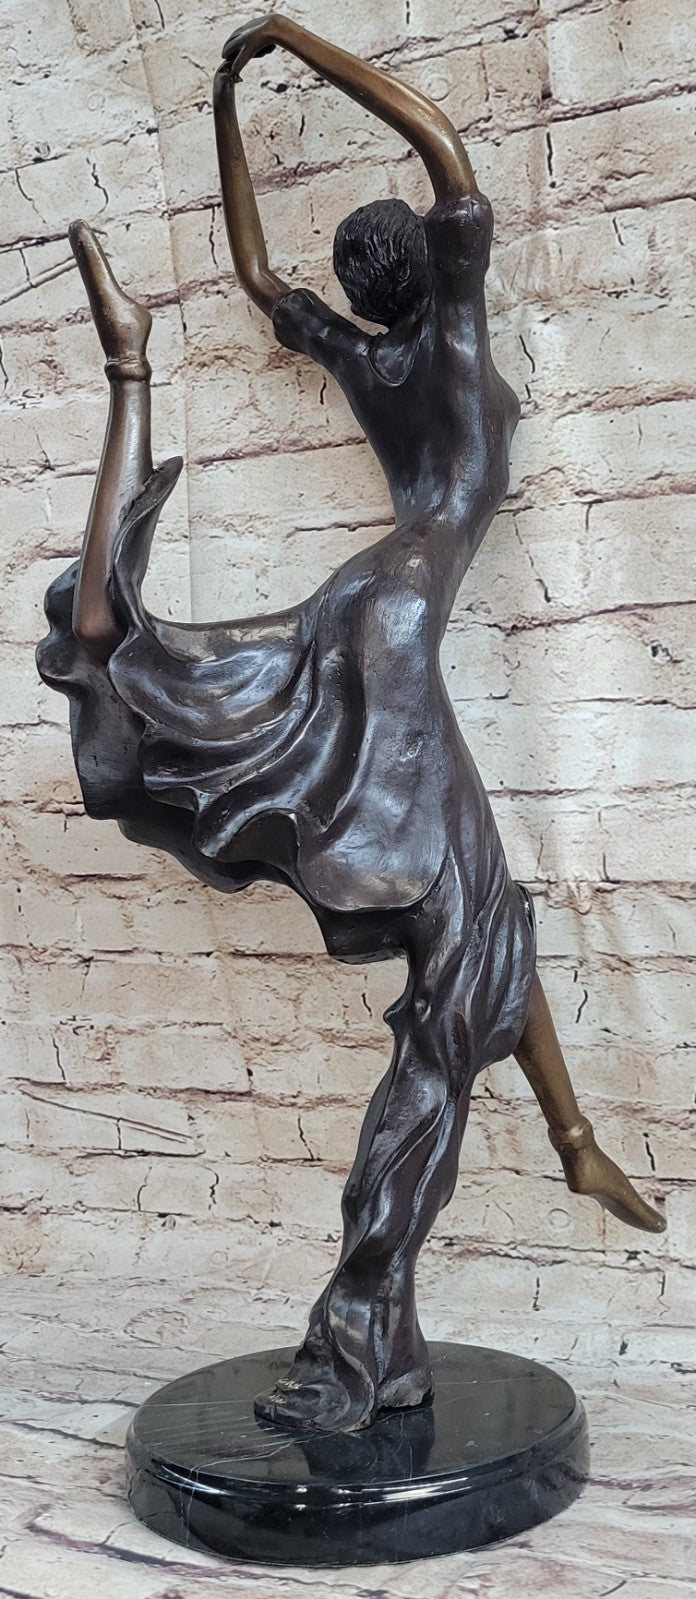 Bronze Wild Modern Contemporary Dance or Dancing sculpture by artist Collett